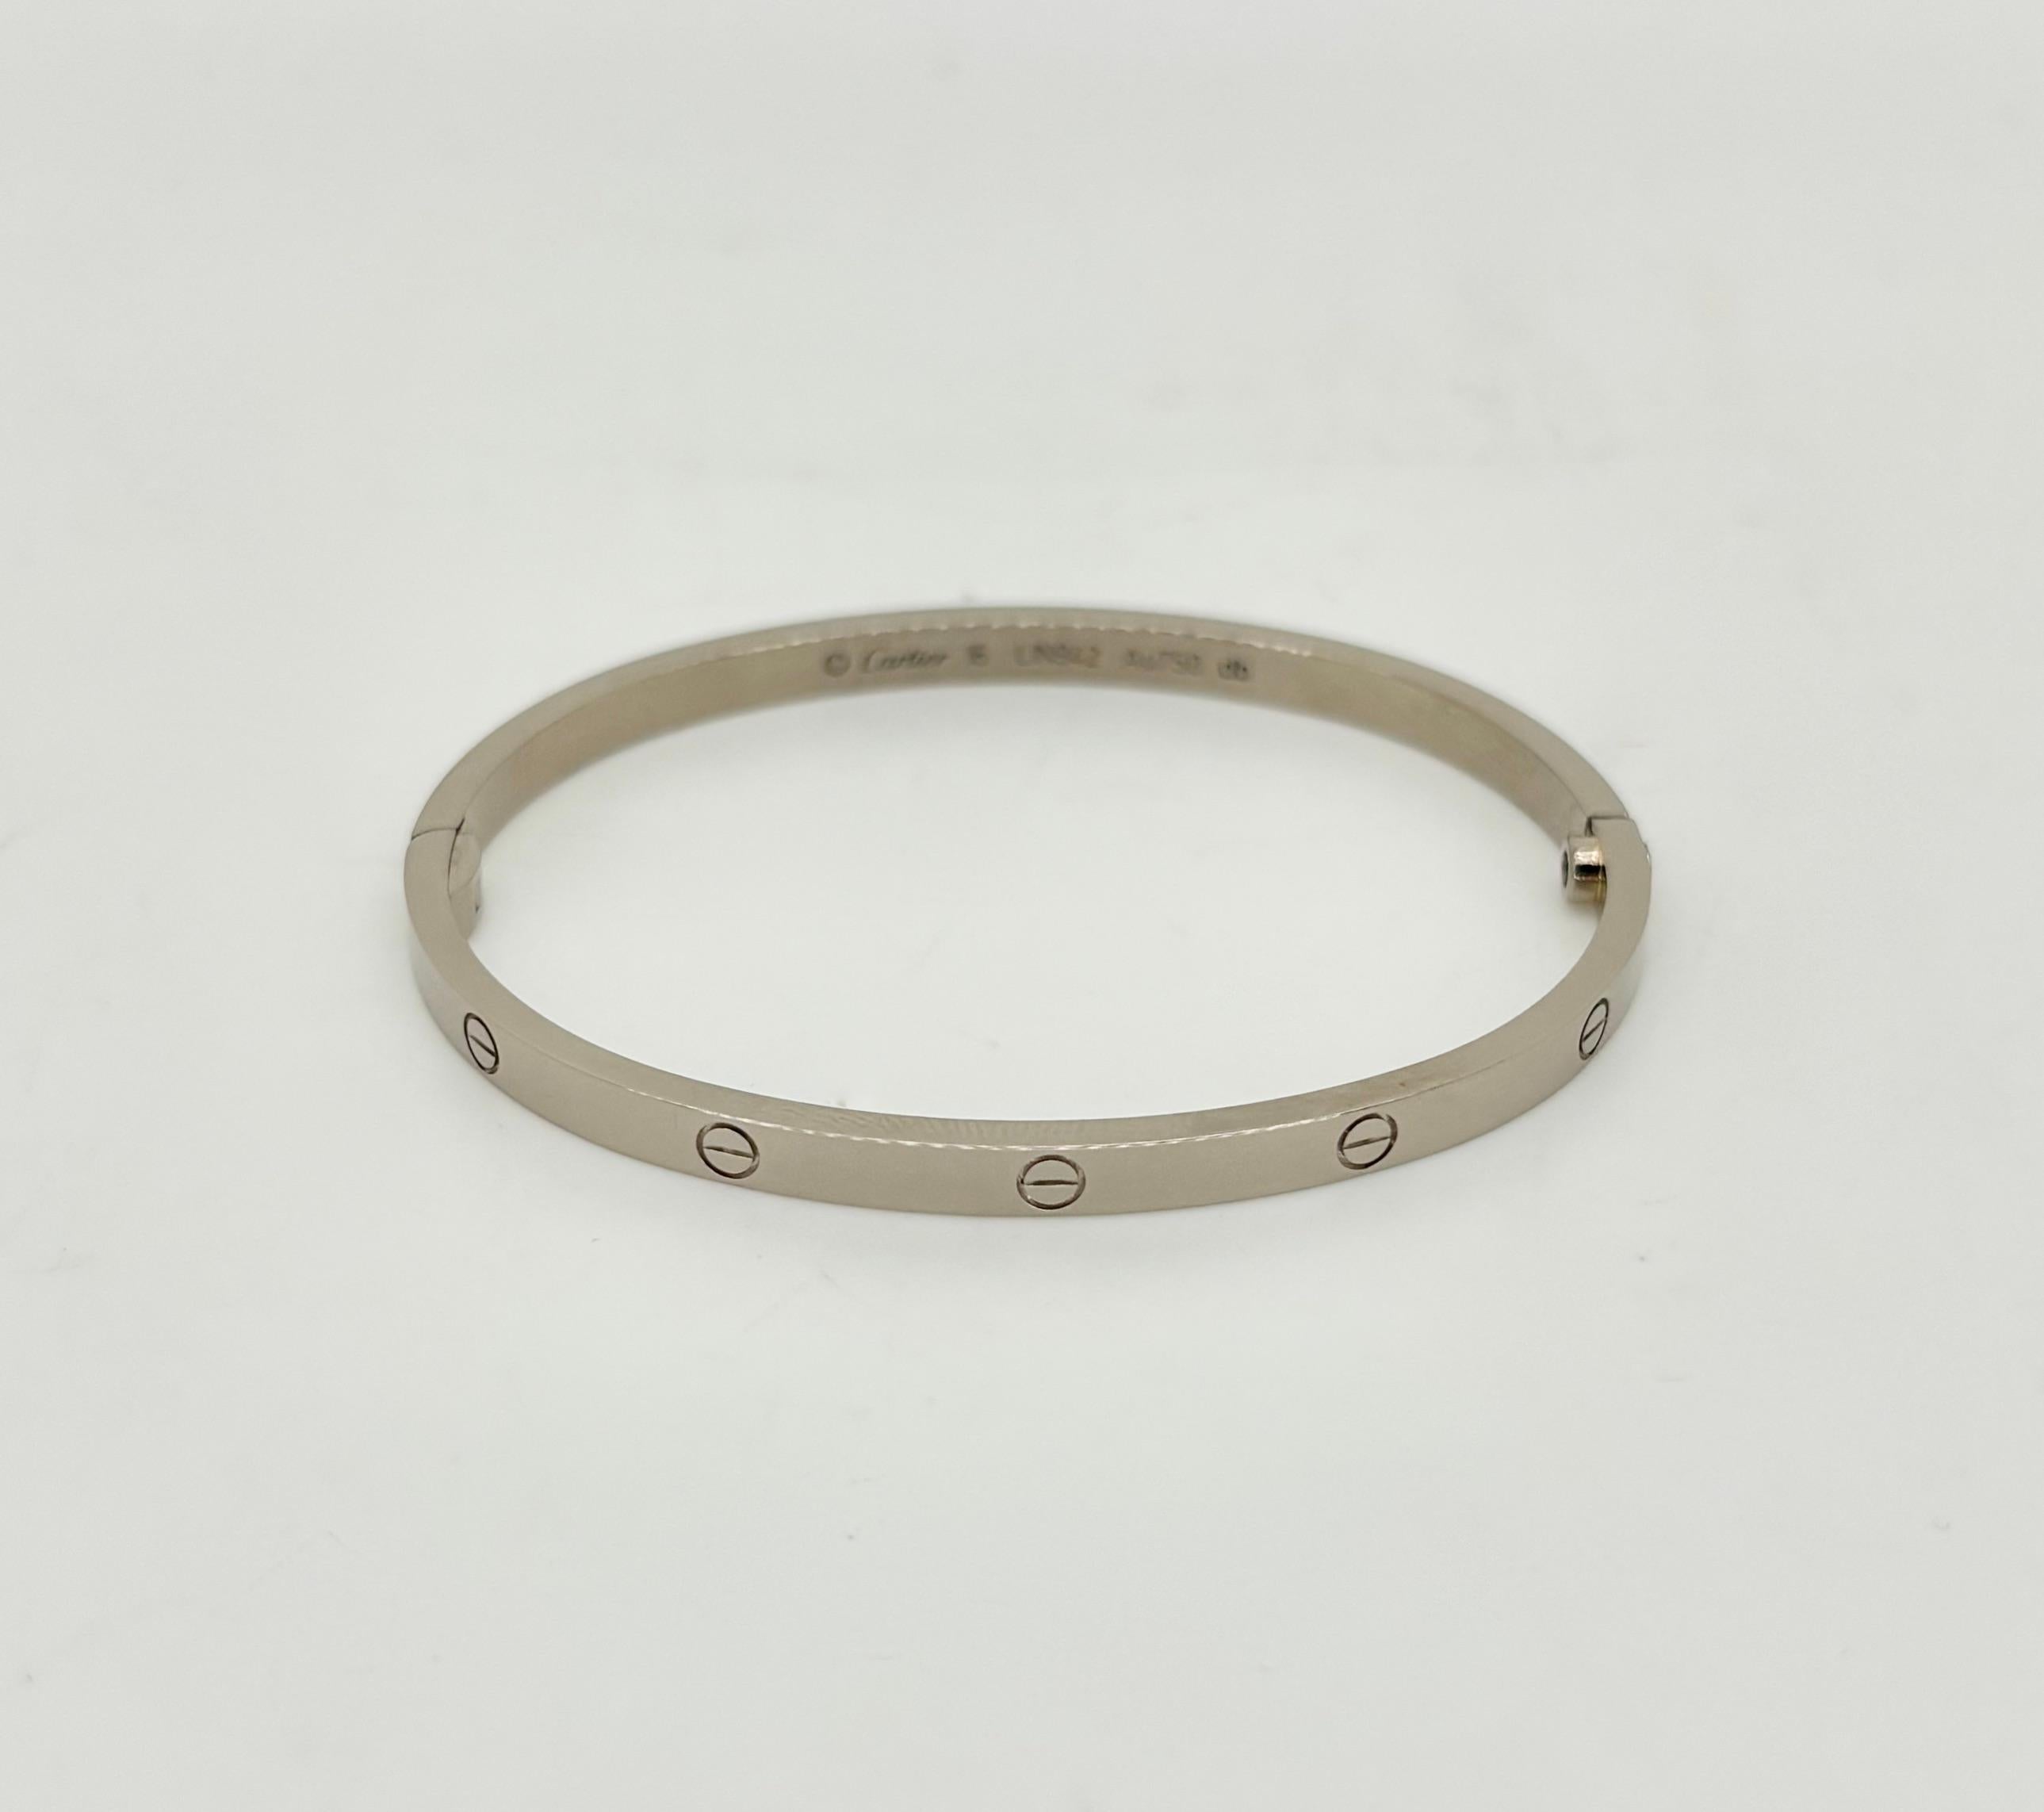 Authentique bracelet LOVE de Cartier en or blanc 18 carats avec boîte d'origine et tournevis. 

Créateur : Cartier
Métal : Or blanc 18k
Taille du bracelet : 16 - 5.75